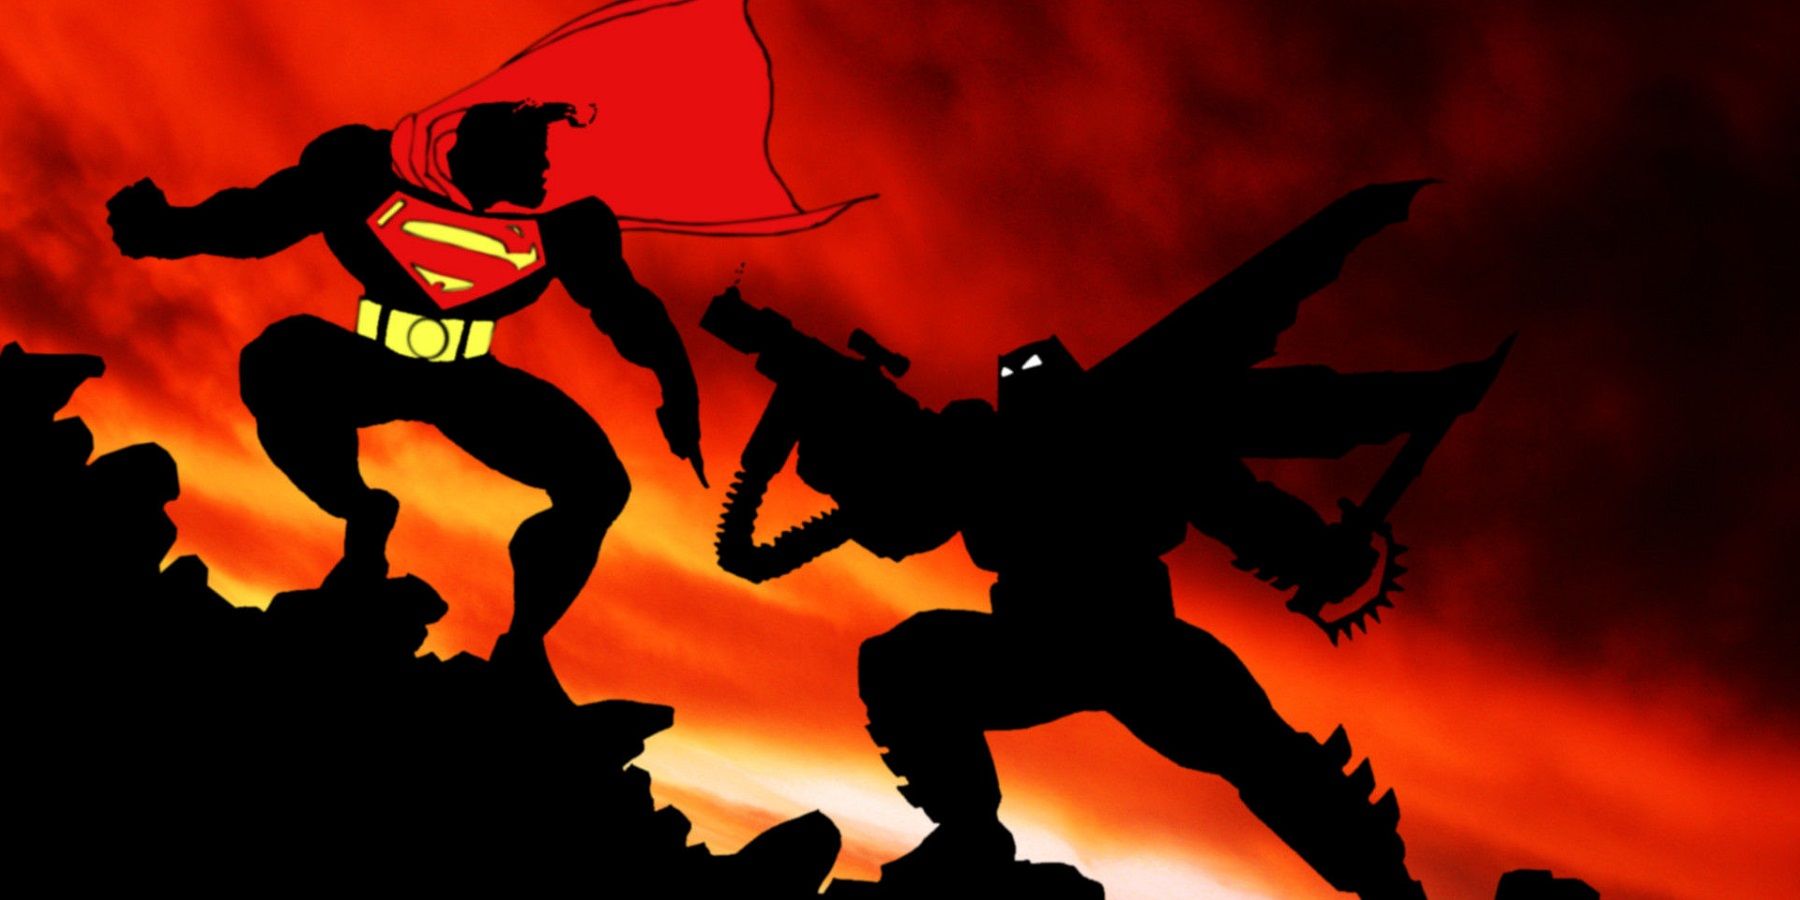 Superman fights Batman in The Dark Knight Returns